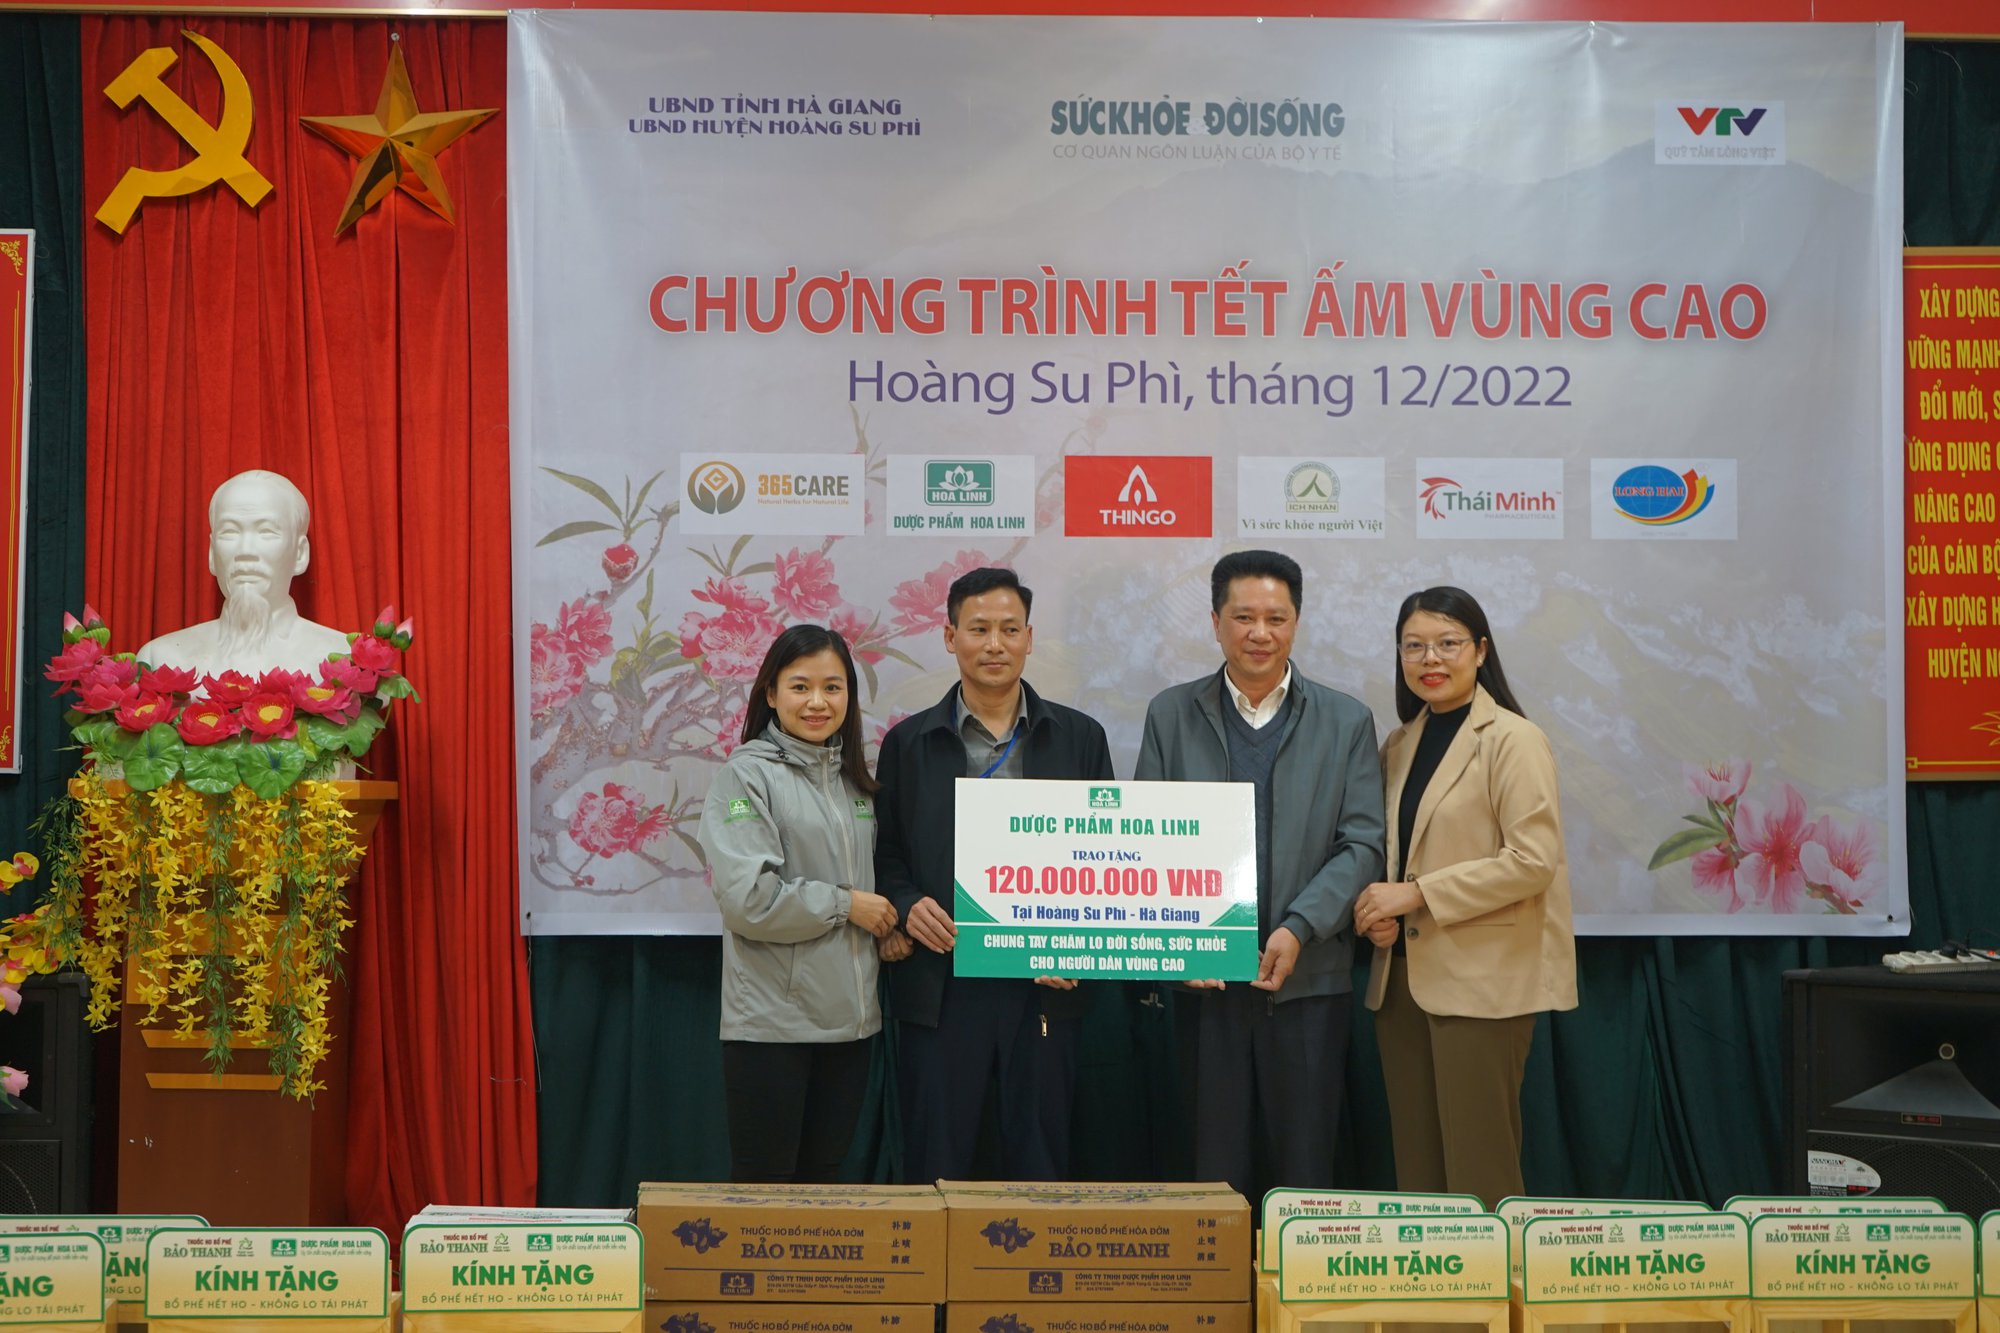 Chương trình thiện nguyện “Tết ấm vùng cao” trao và tặng quà cho 10 trạm y tế của huyện Hoàng Su Phì - Ảnh 6.